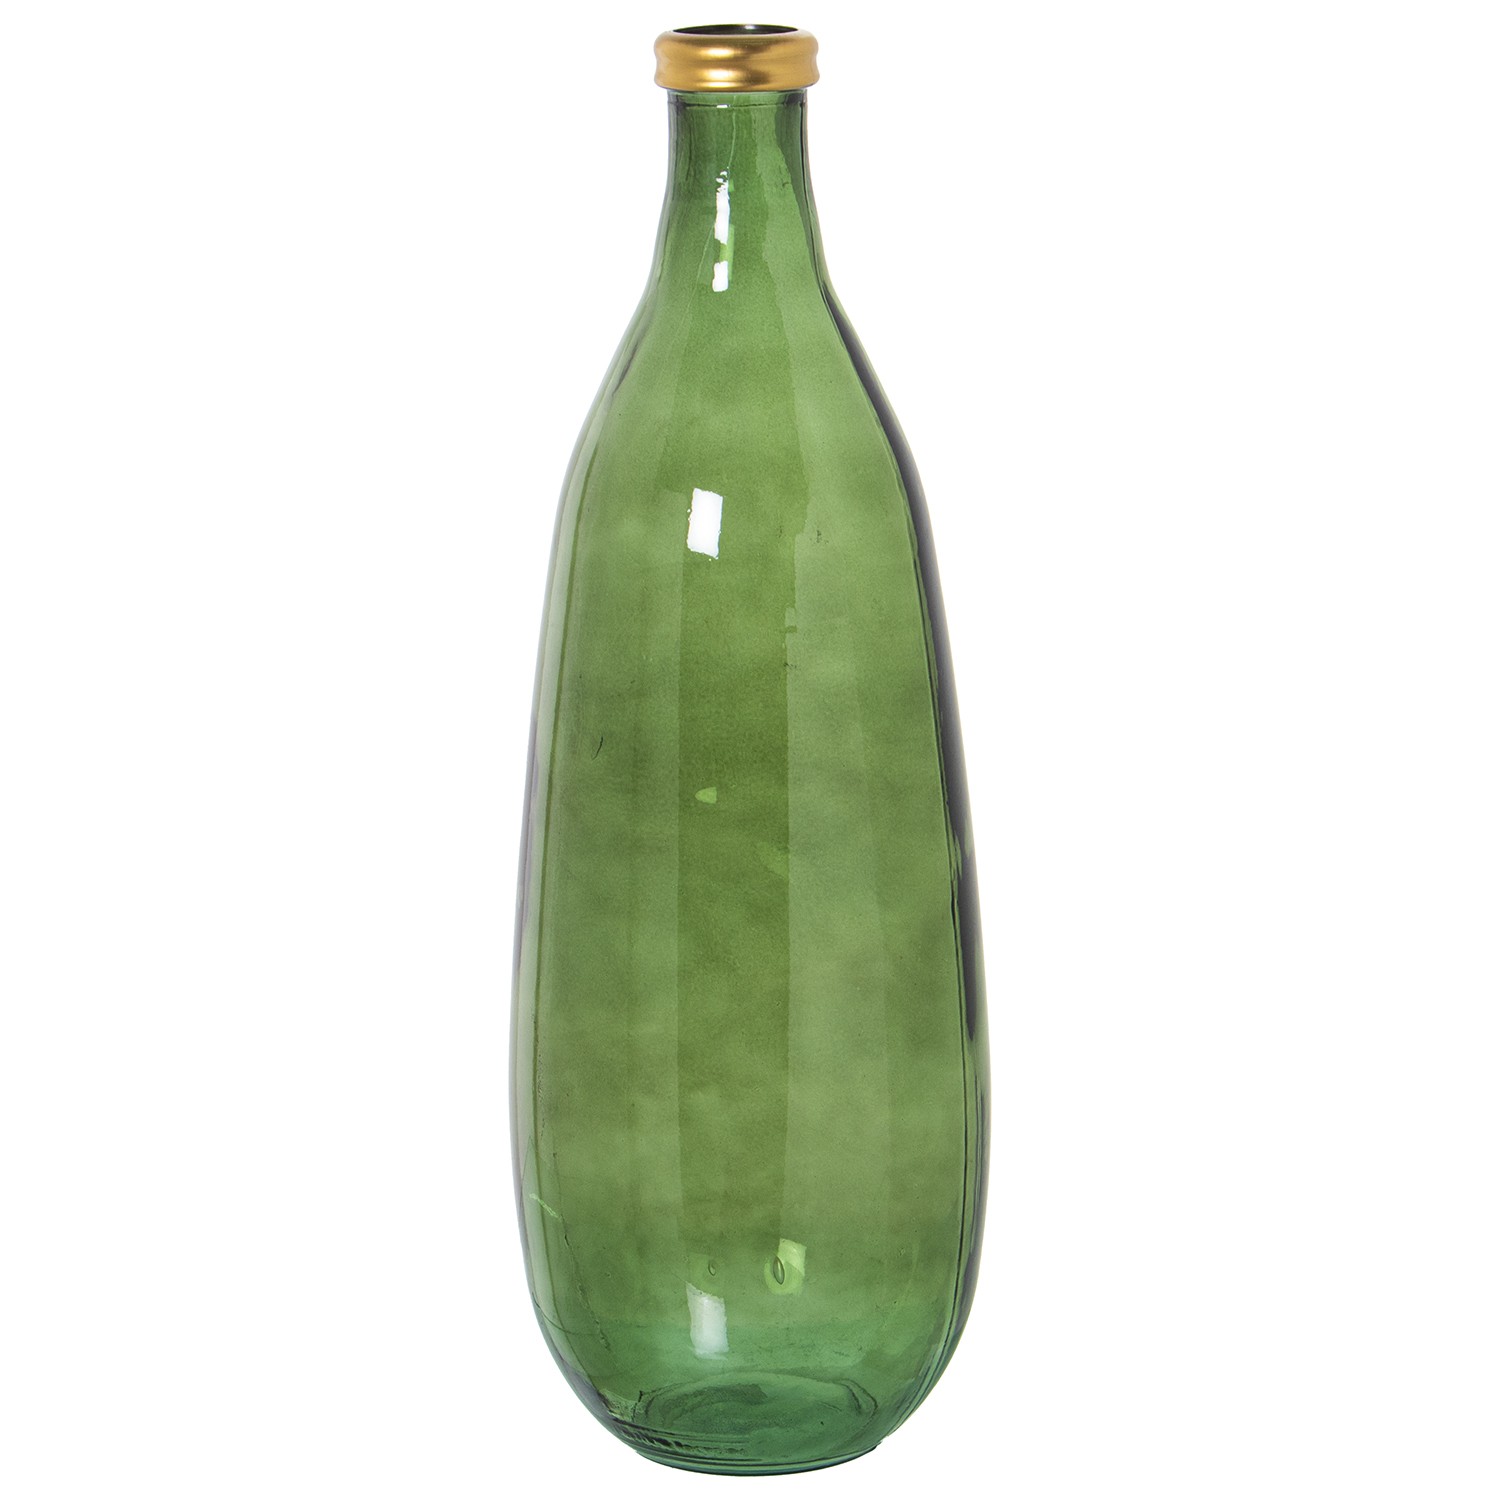 35600-jarron-vidrio-reciclado-verde-75-cm.jfif